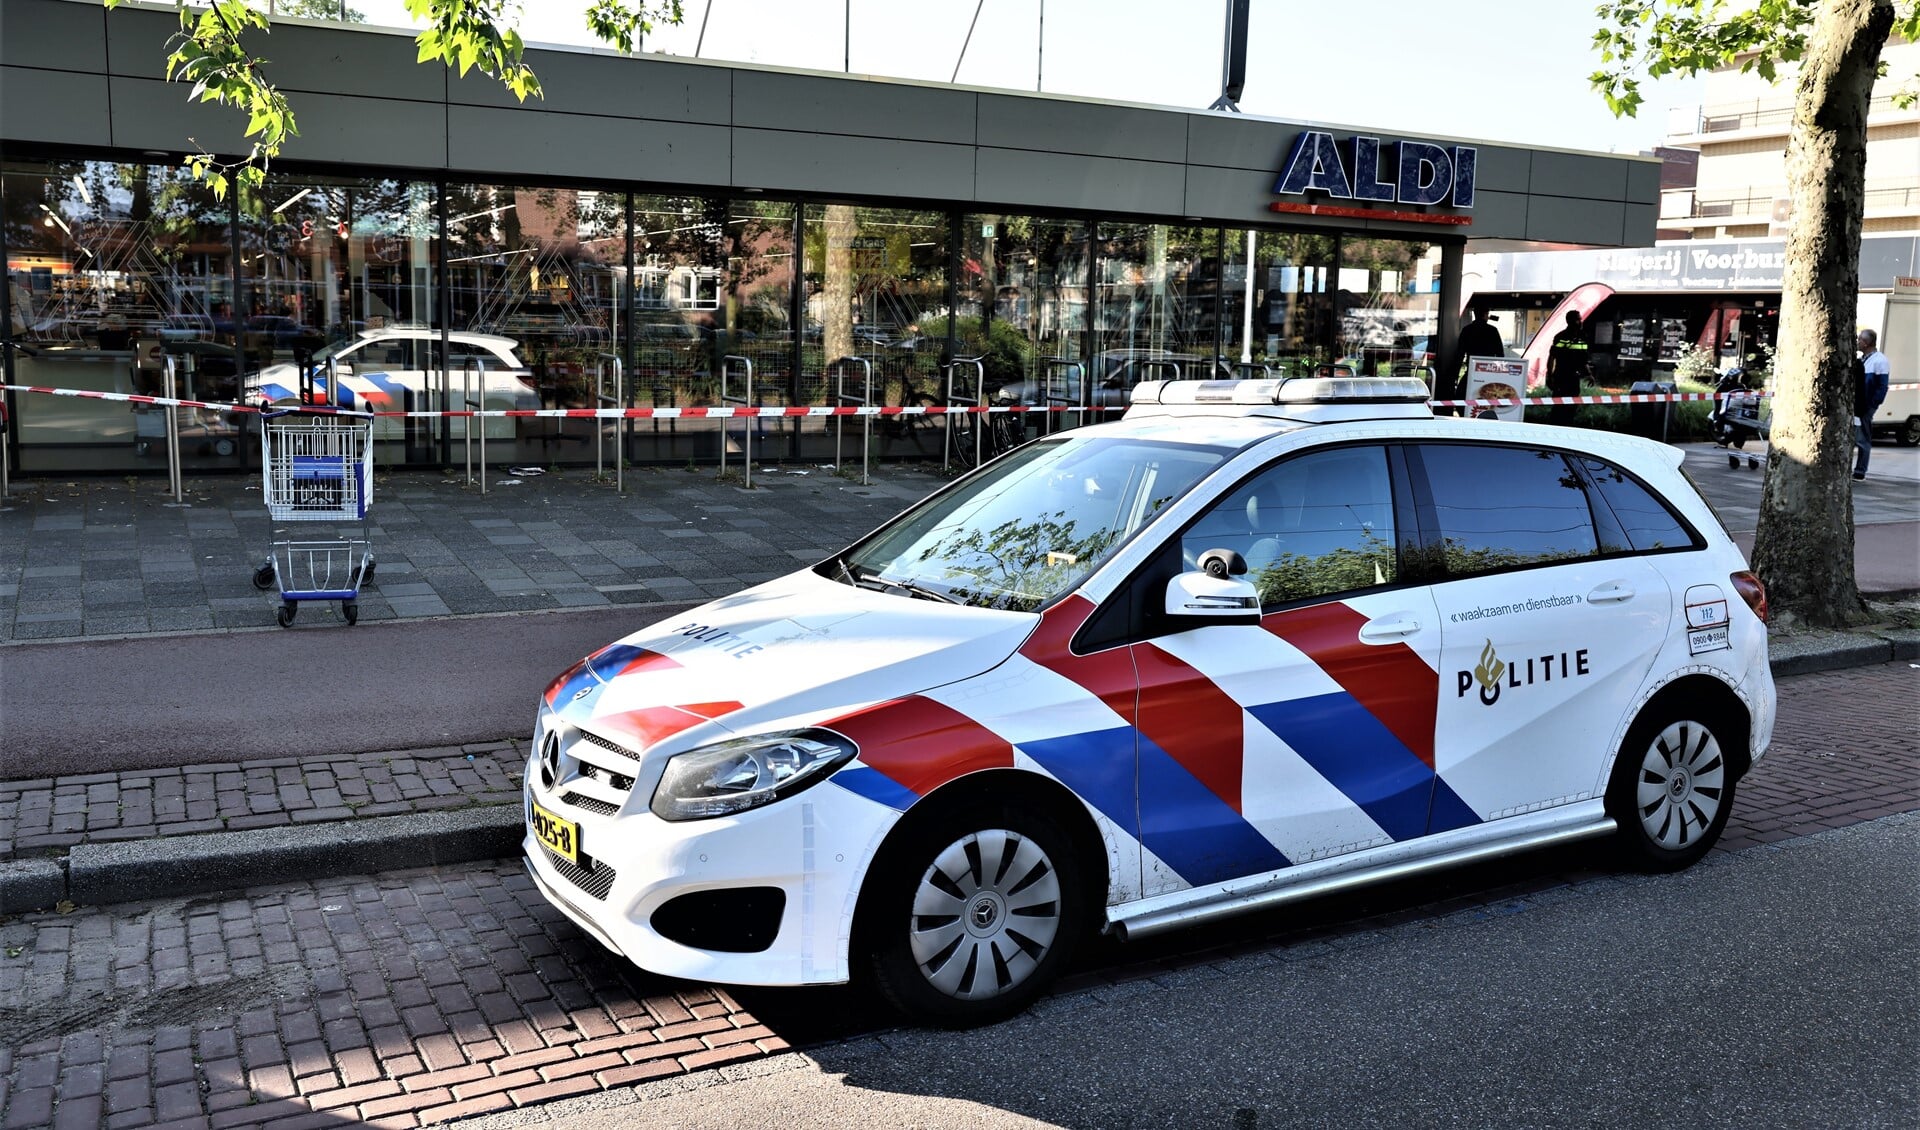 De politie zette een Plaats Delict (PD) af met lint (foto: Sander Paardekooper).